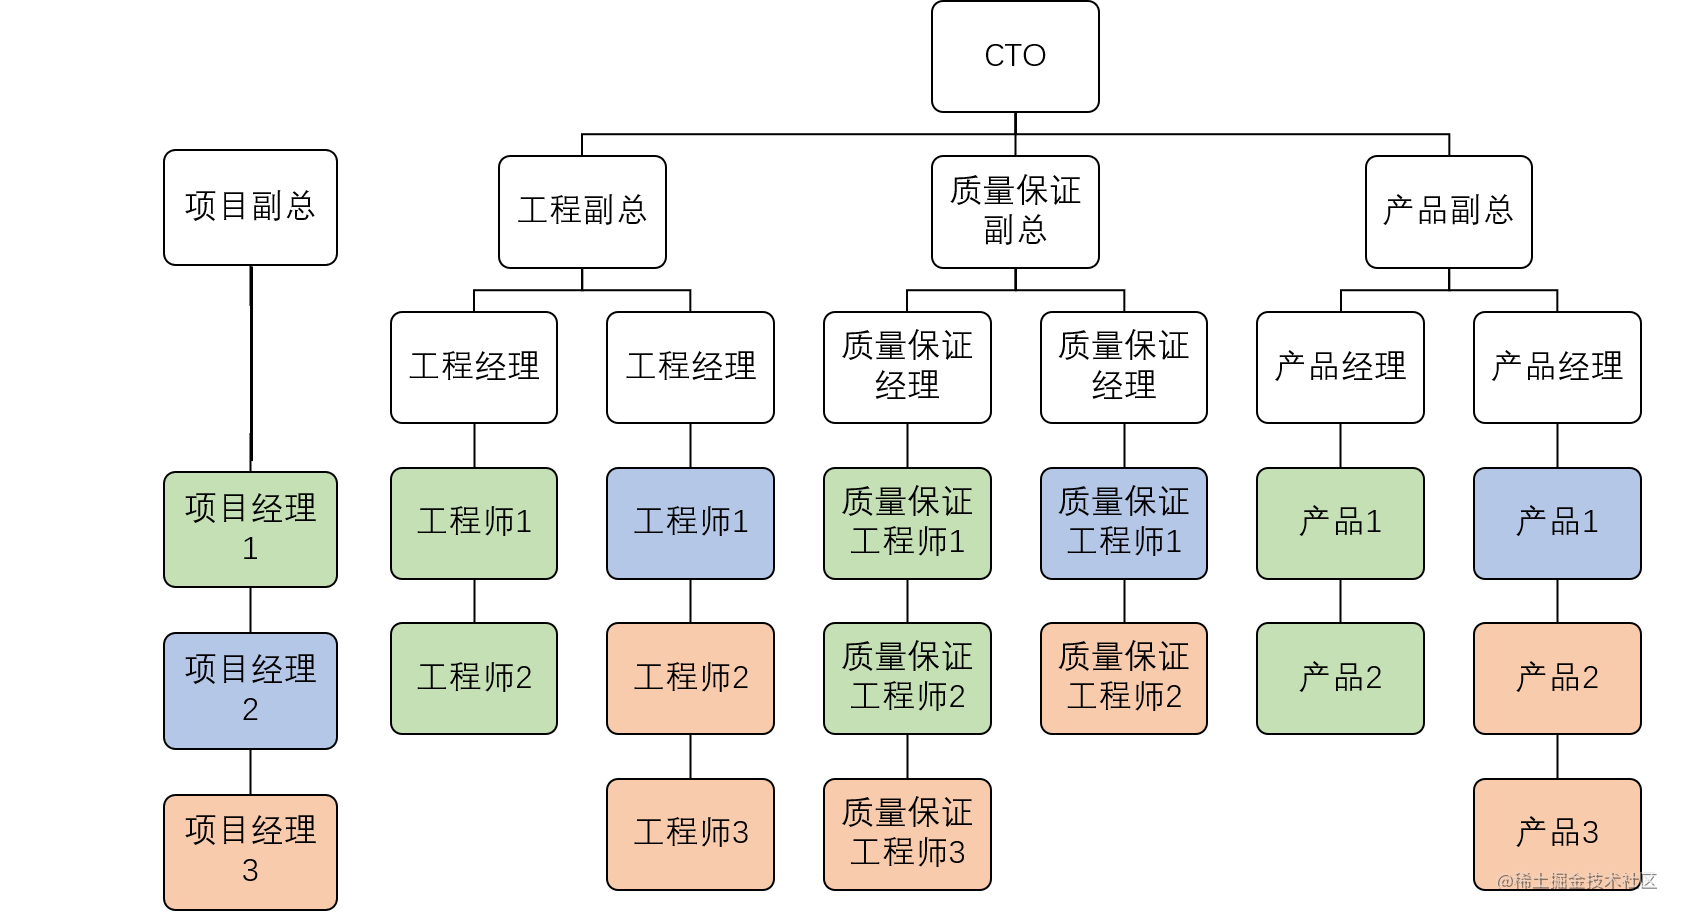 矩阵组织结构图片